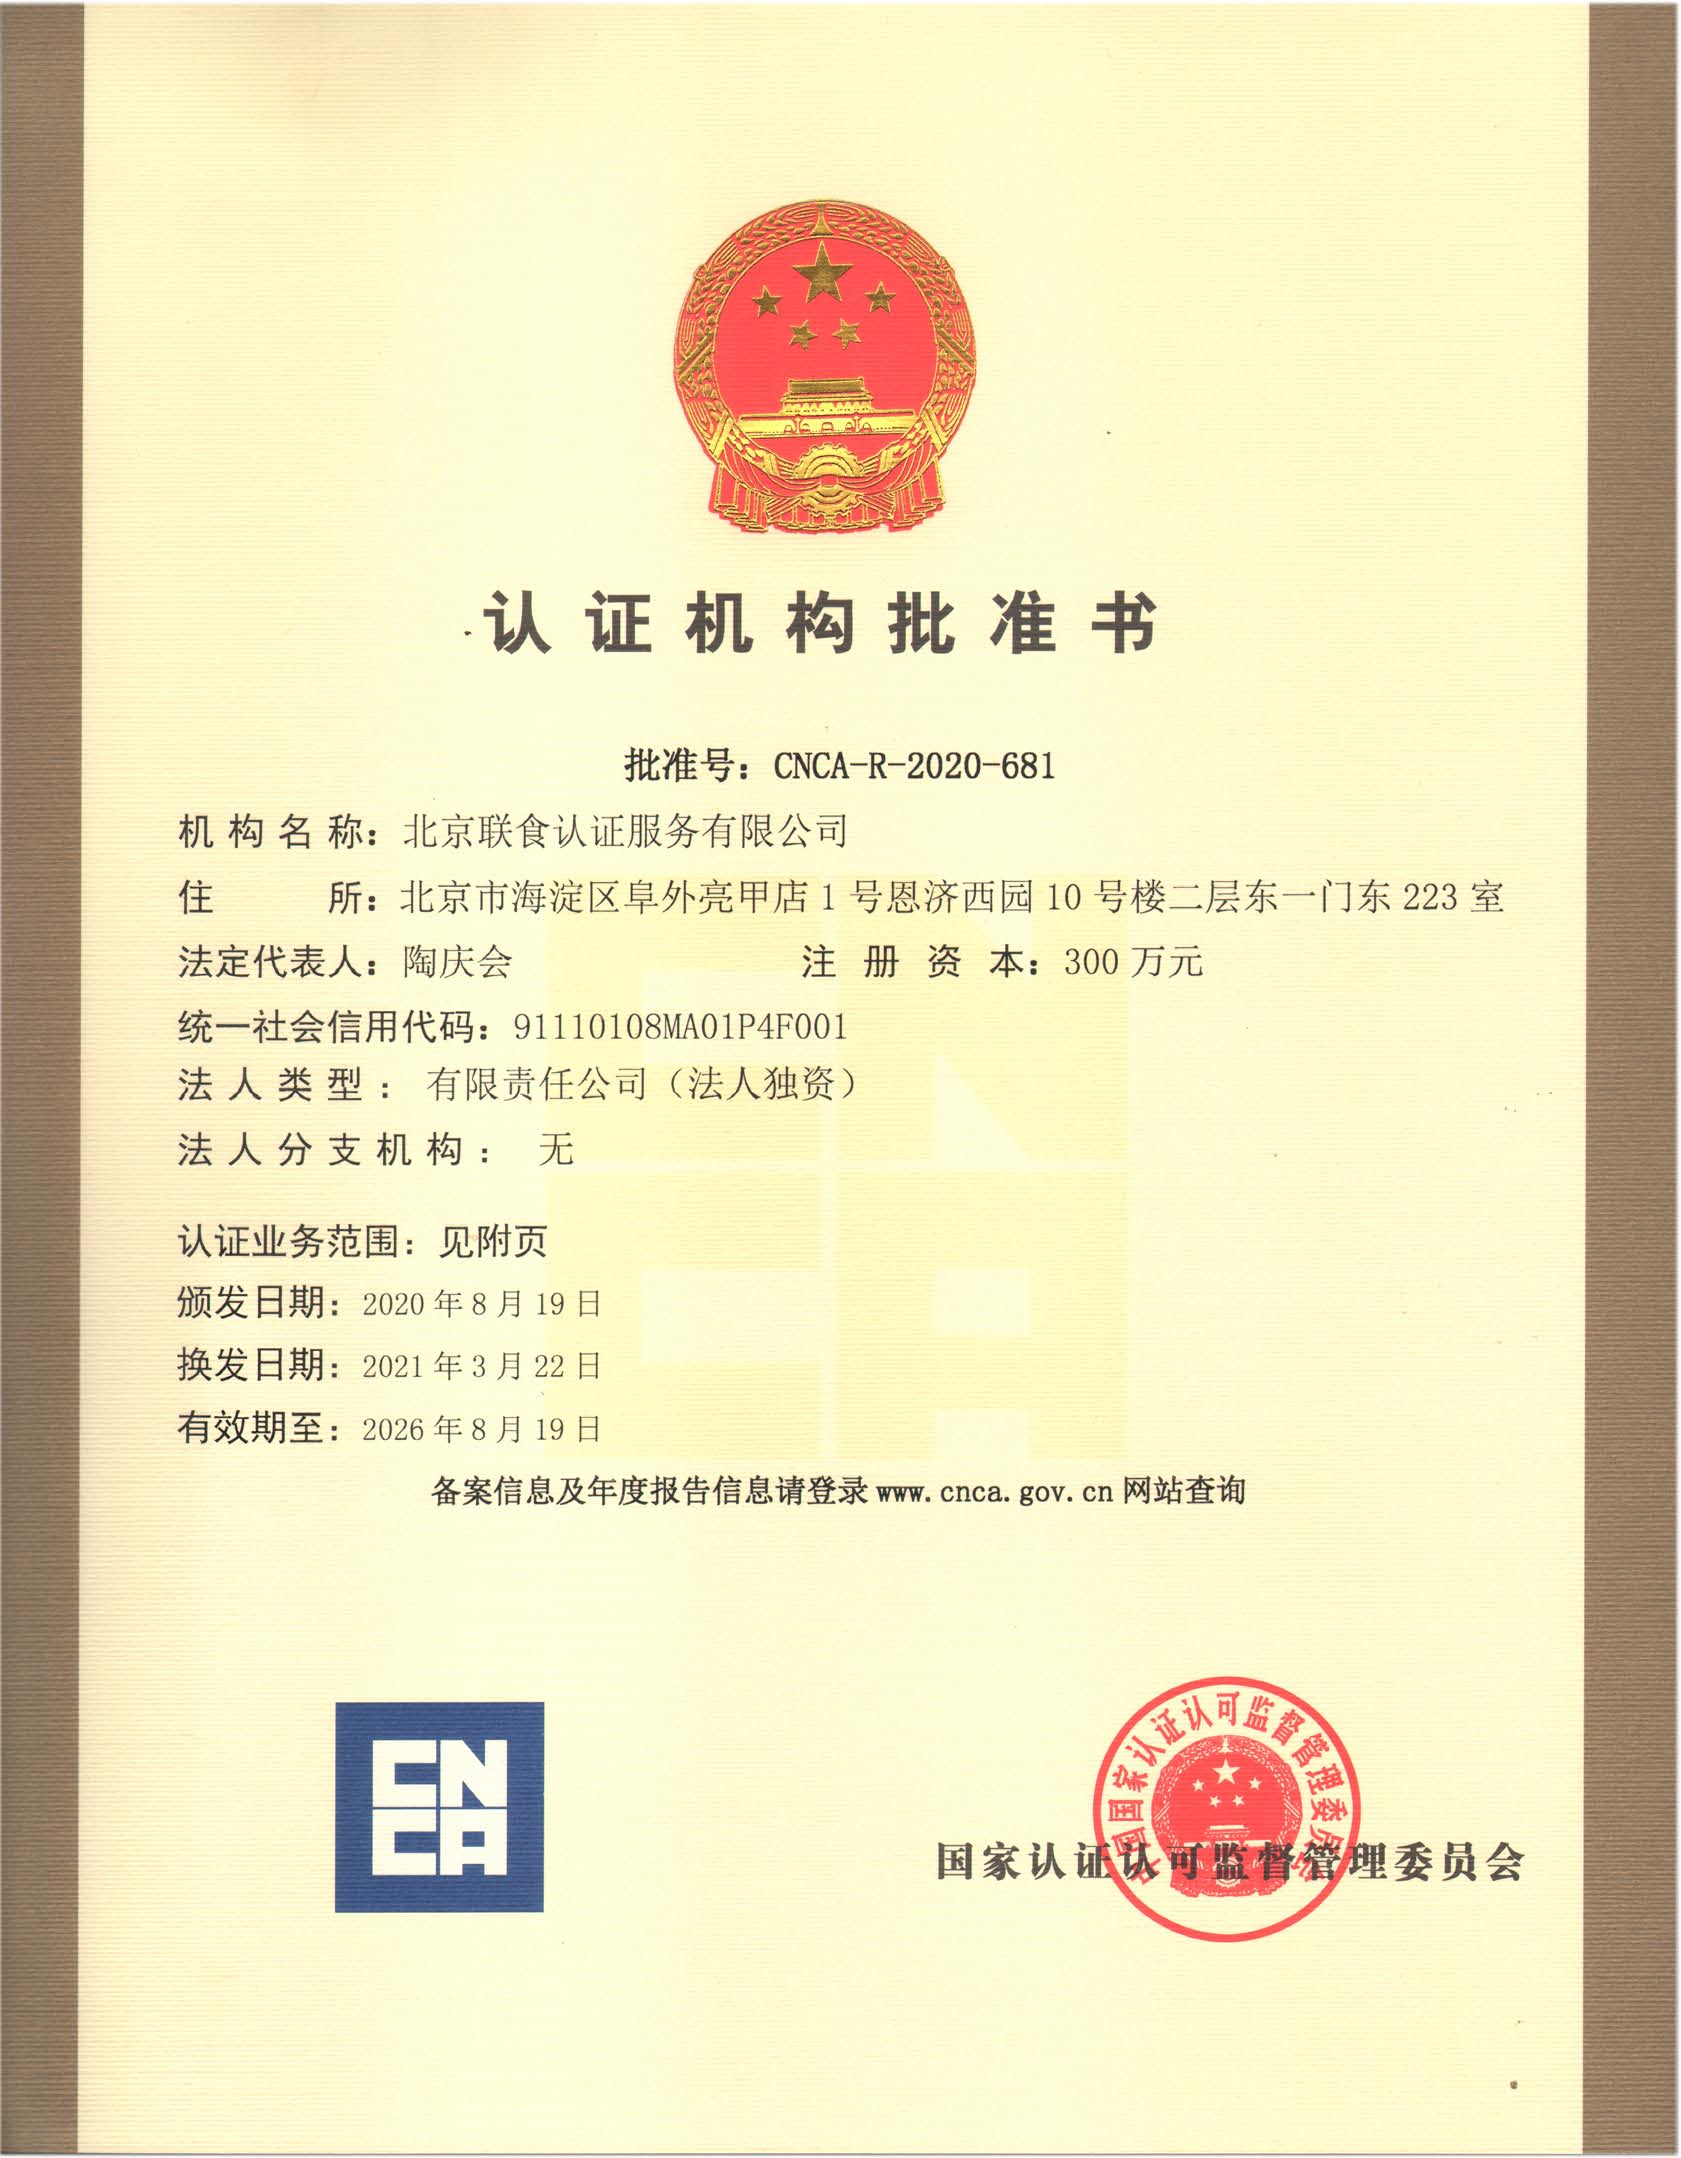 北京联食认证服务有限公司变更住所2021.3.22.jpg